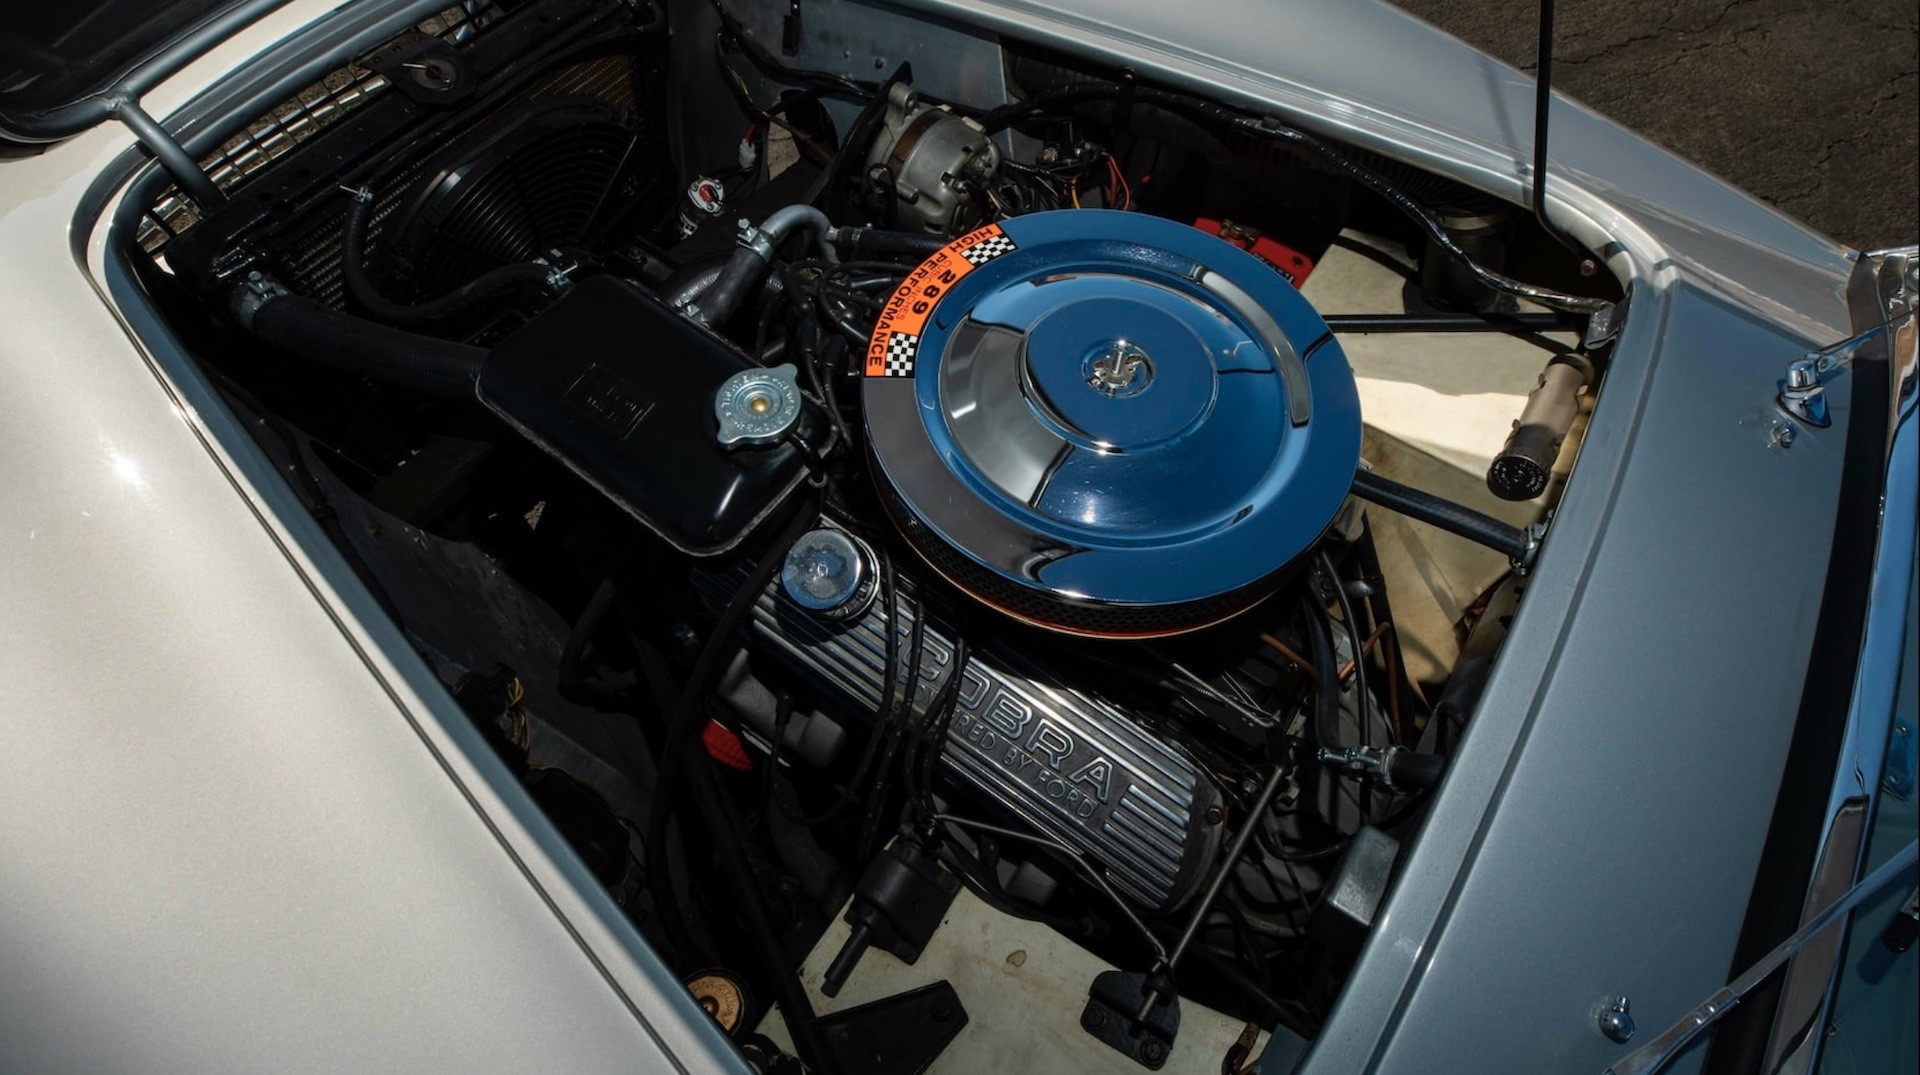 Редкая двухпедальная модель Shelby Cobra 1965 года